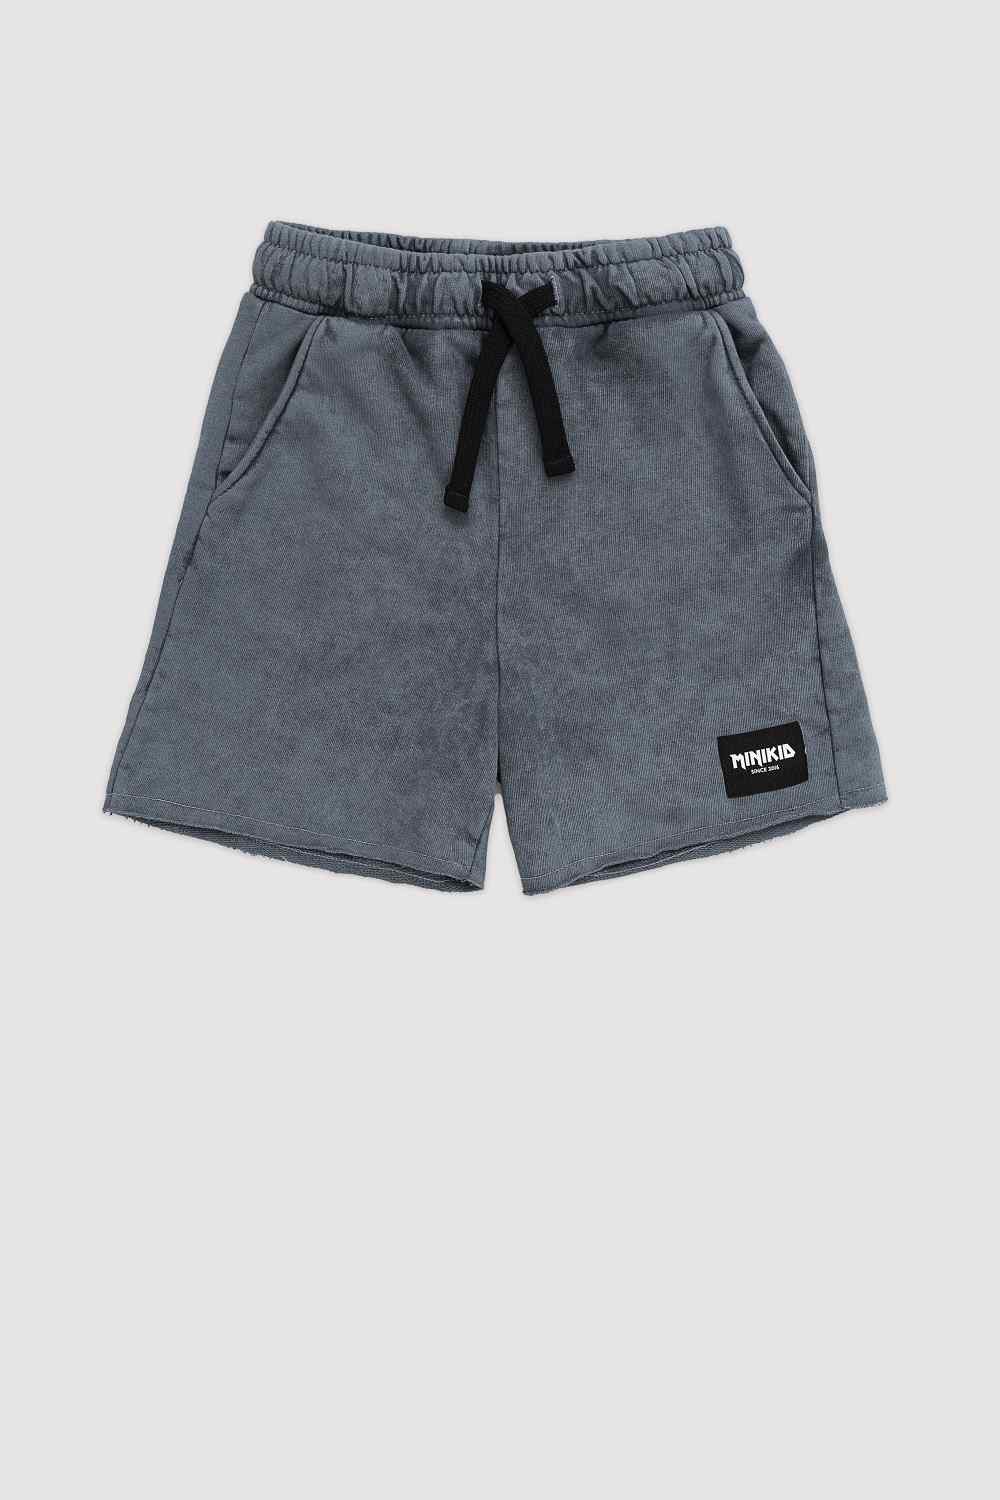 Vintage Teal Comfort Fit Shorts